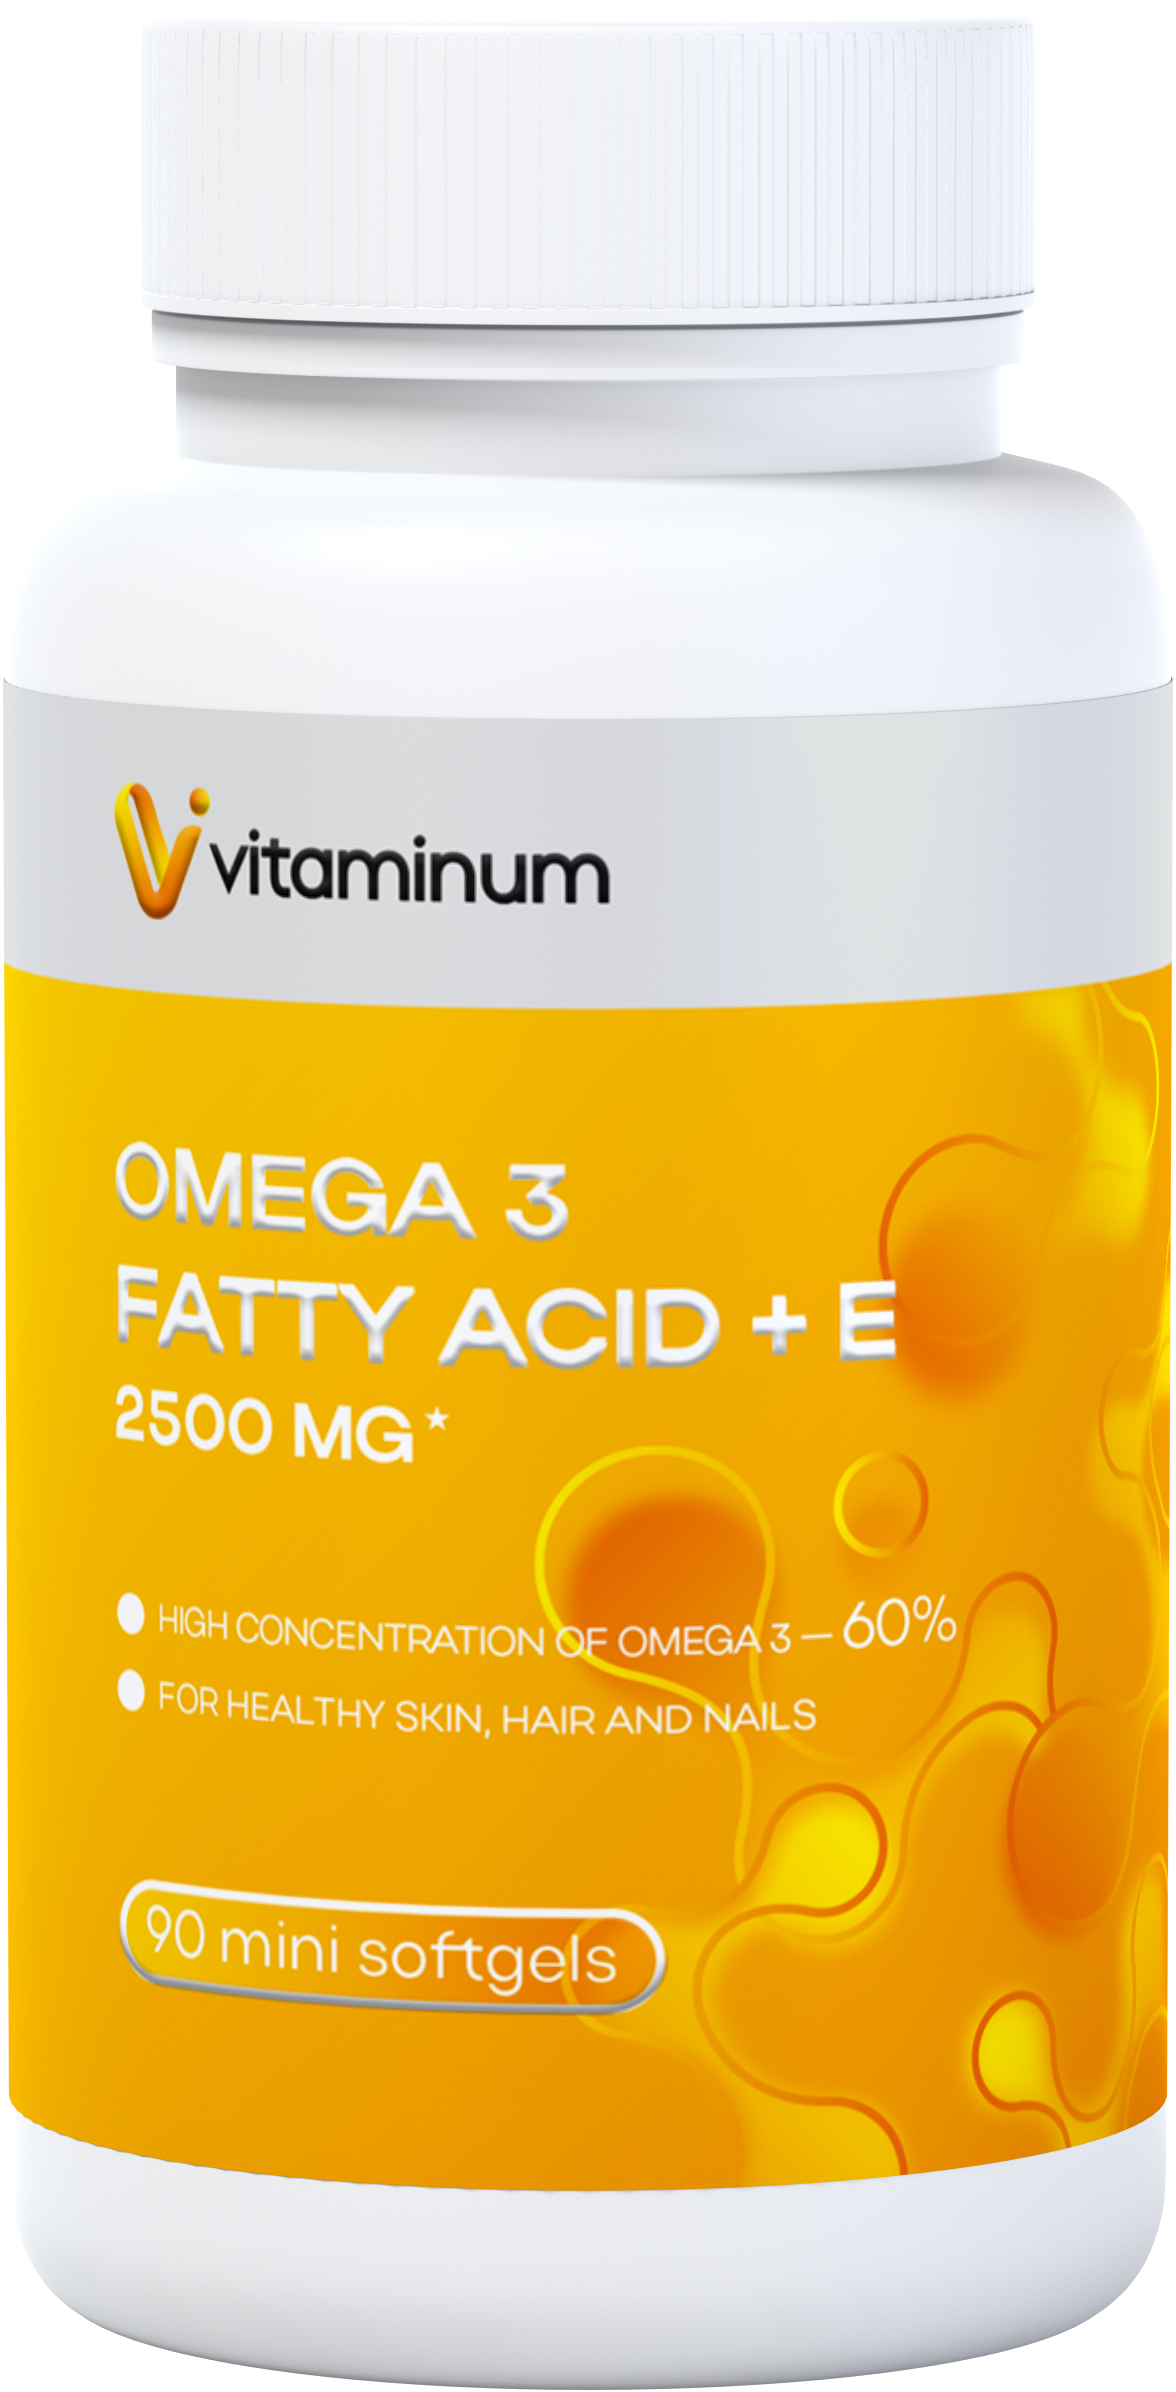  Vitaminum ОМЕГА 3 60% + витамин Е (2500 MG*) 90 капсул 700 мг   в Шебекине